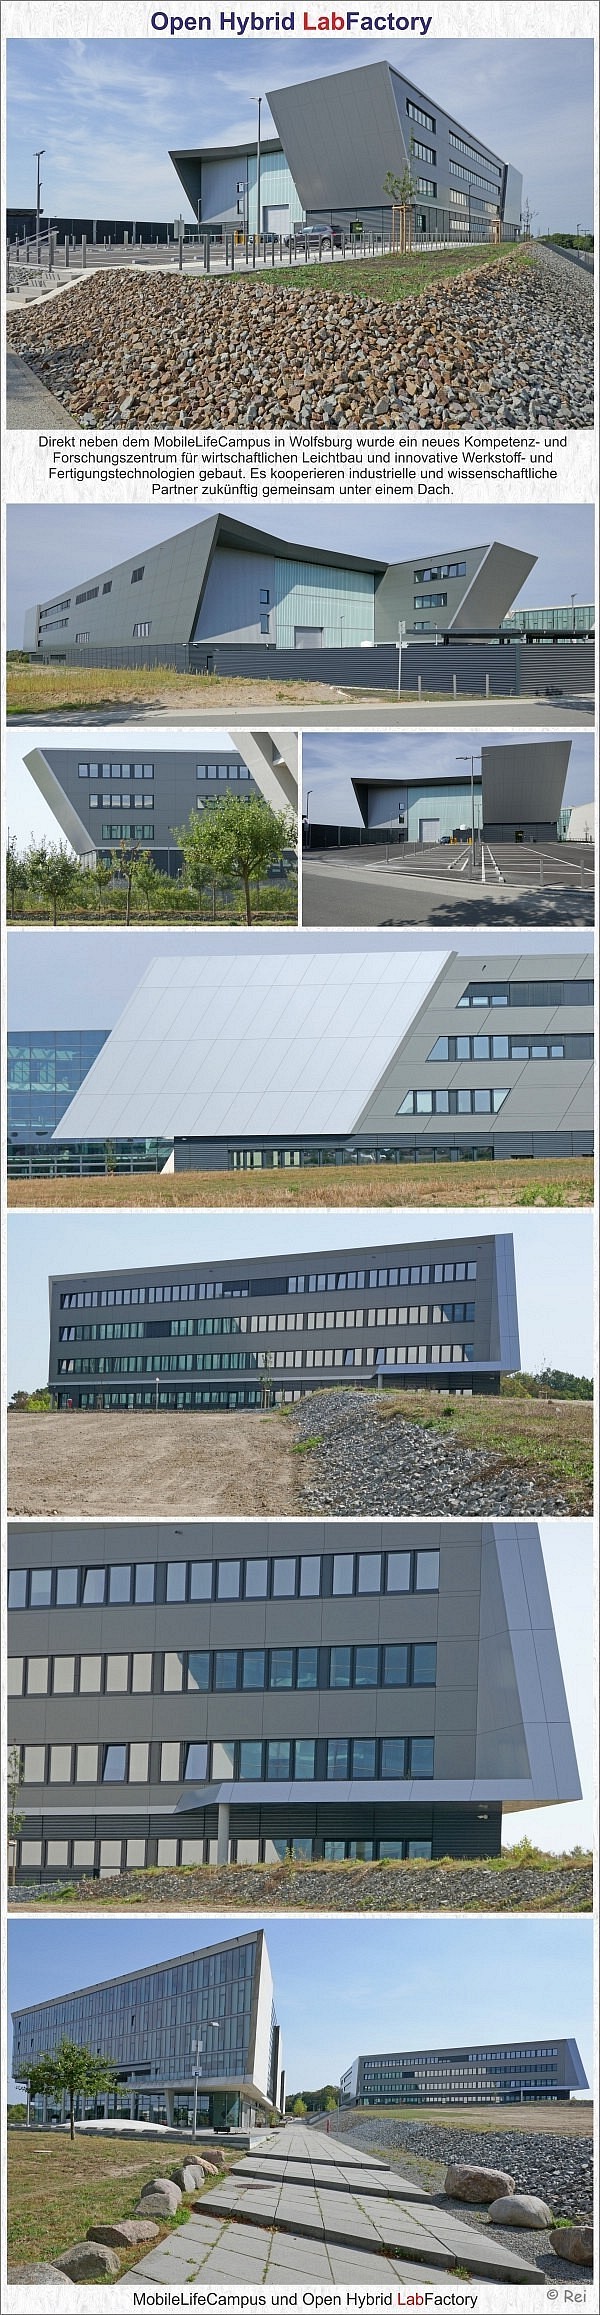 Open Hybrid LabFactory in Wolfsburg